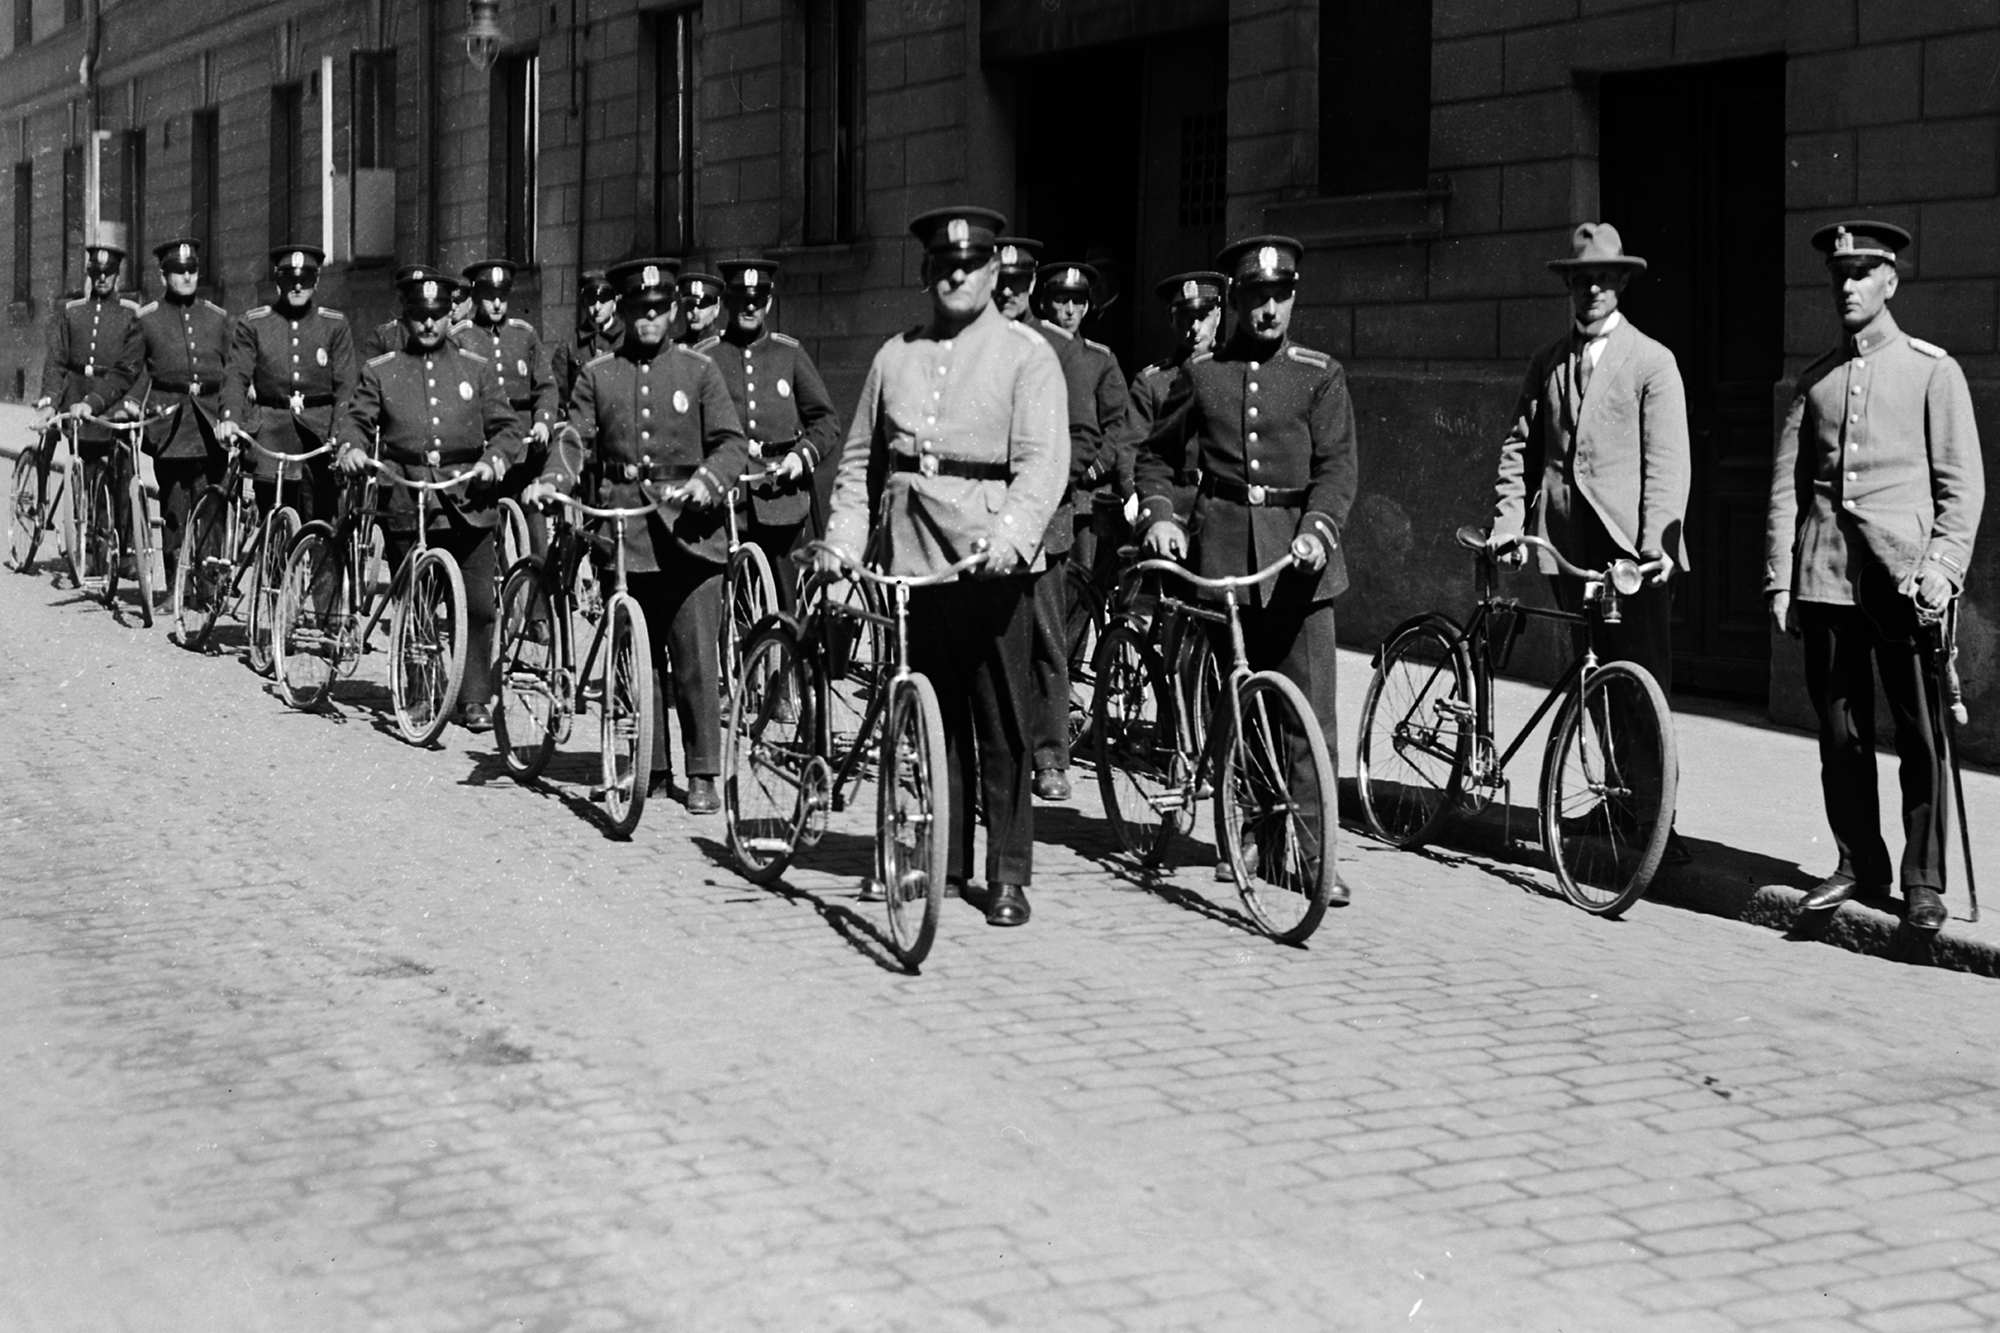 Svartvitt gammalt fotografi av poliser i uniform som står bredvid sina cyklar. Poliserna står i två led på en gata i en stad. Bild Polisemuseet